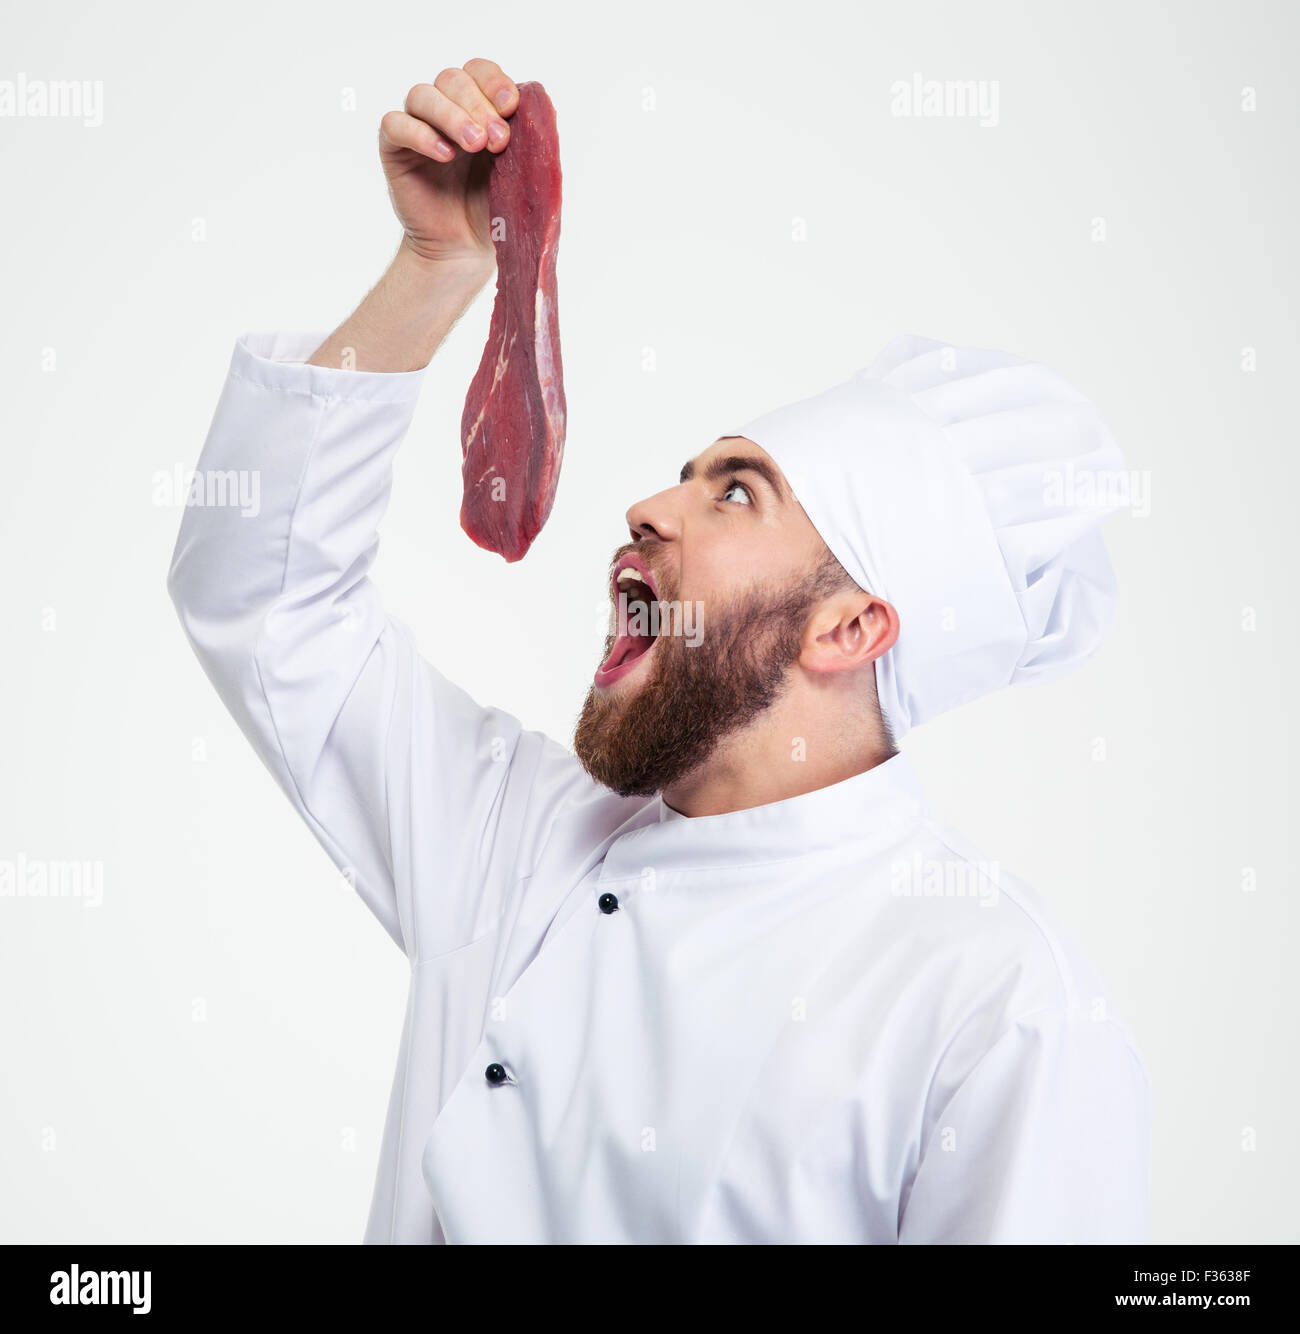 Ritratto di un divertente chef cucinare la lettura di mangiare carni fresche isolate su un sfondo whtie Foto Stock